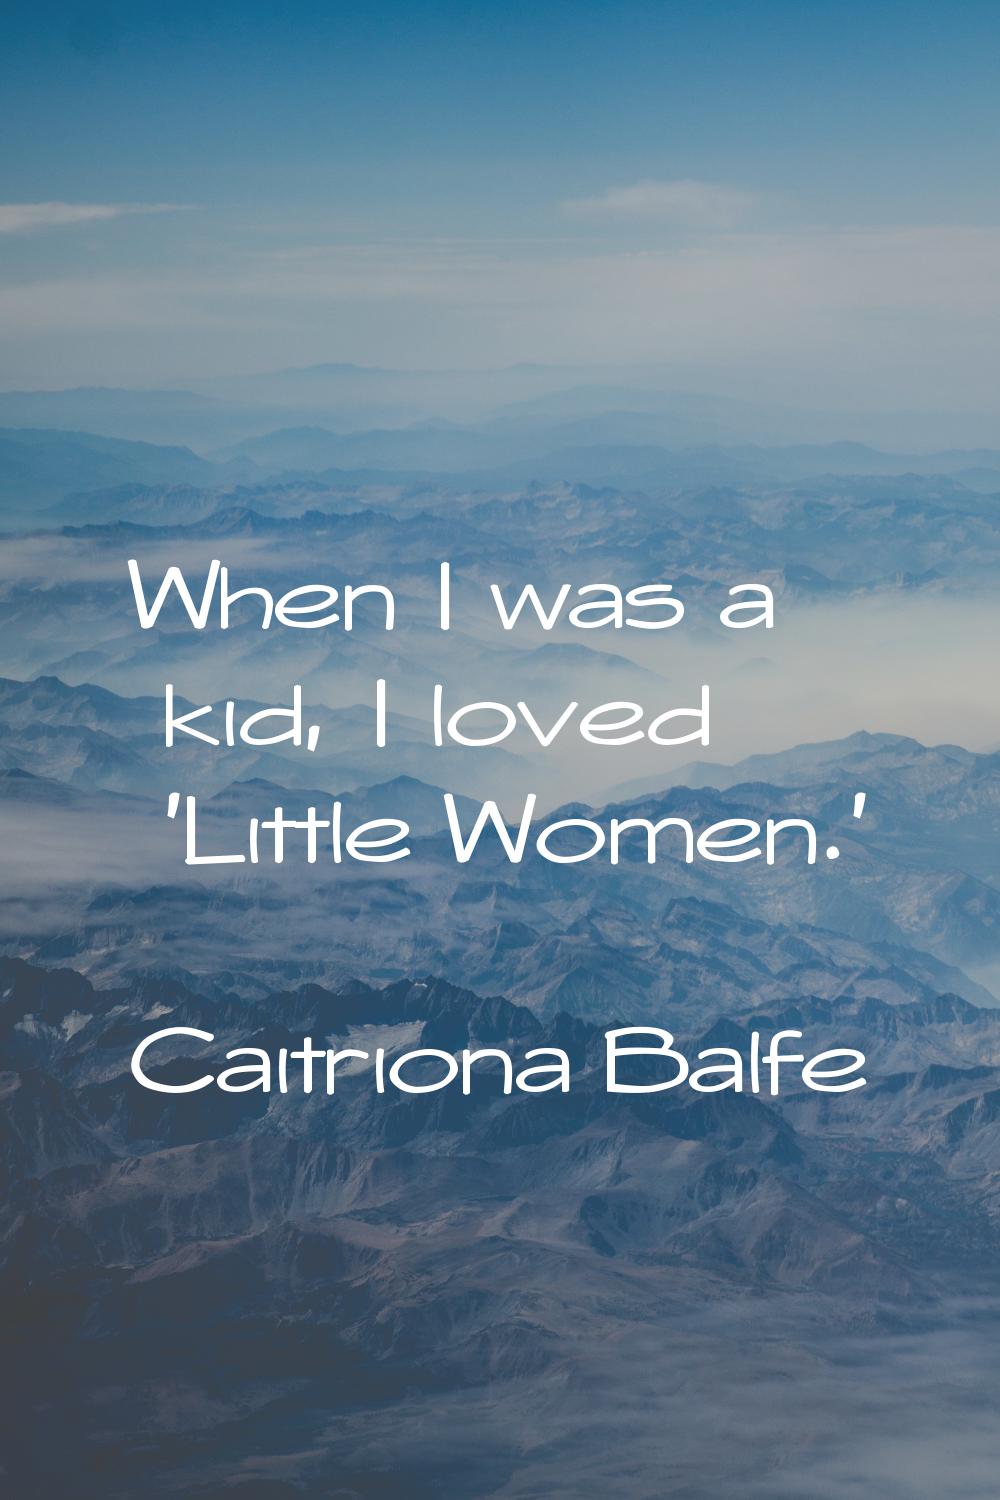 When I was a kid, I loved 'Little Women.'